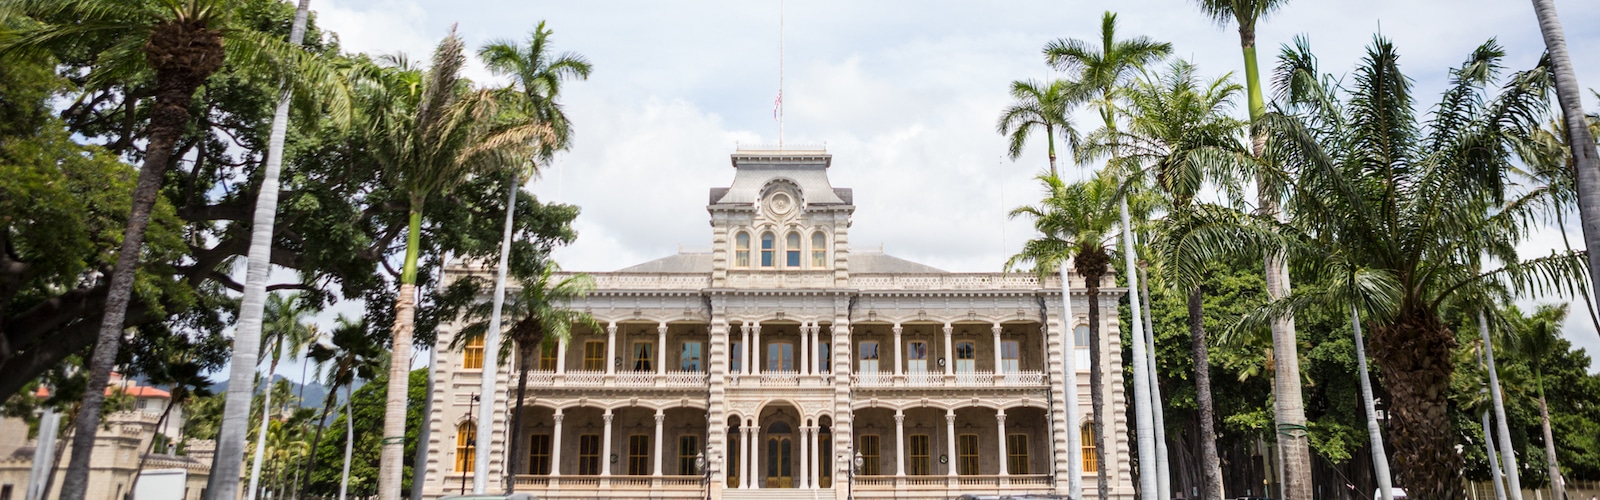 Hawaii Culture, Iolani Palace, Honolulu, Oahu